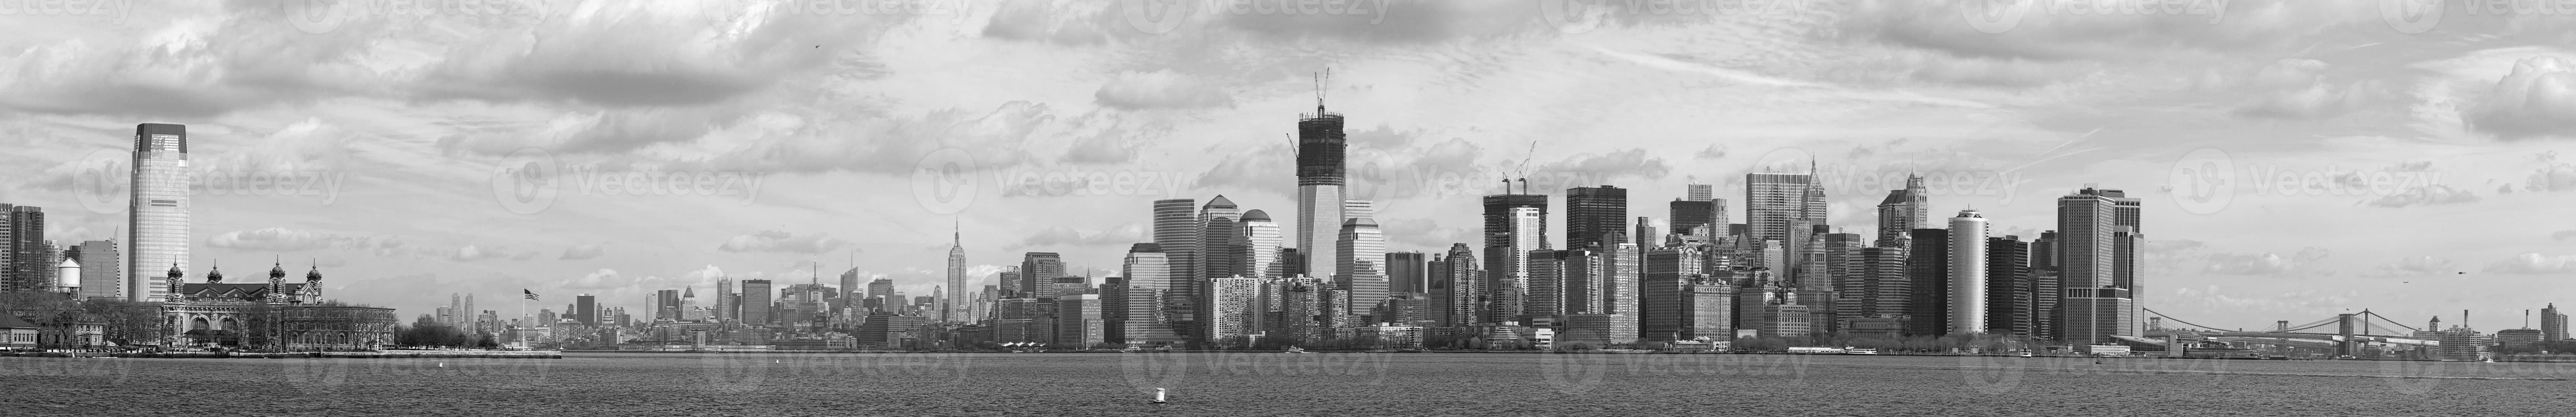 nieuw york Manhattan panorama van standbeeld van vrijheid foto